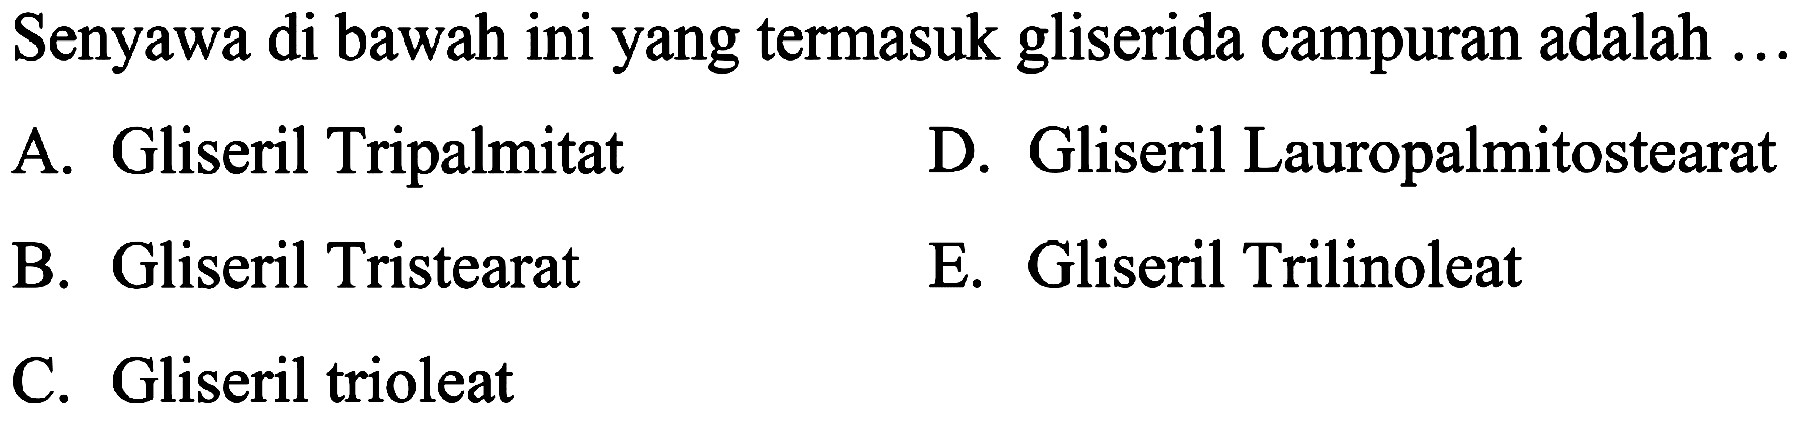 Senyawa di bawah ini yang termasuk gliserida campuran adalah ...
A. Gliseril Tripalmitat
D. Gliseril Lauropalmitostearat
B. Gliseril Tristearat
E. Gliseril Trilinoleat
C. Gliseril trioleat